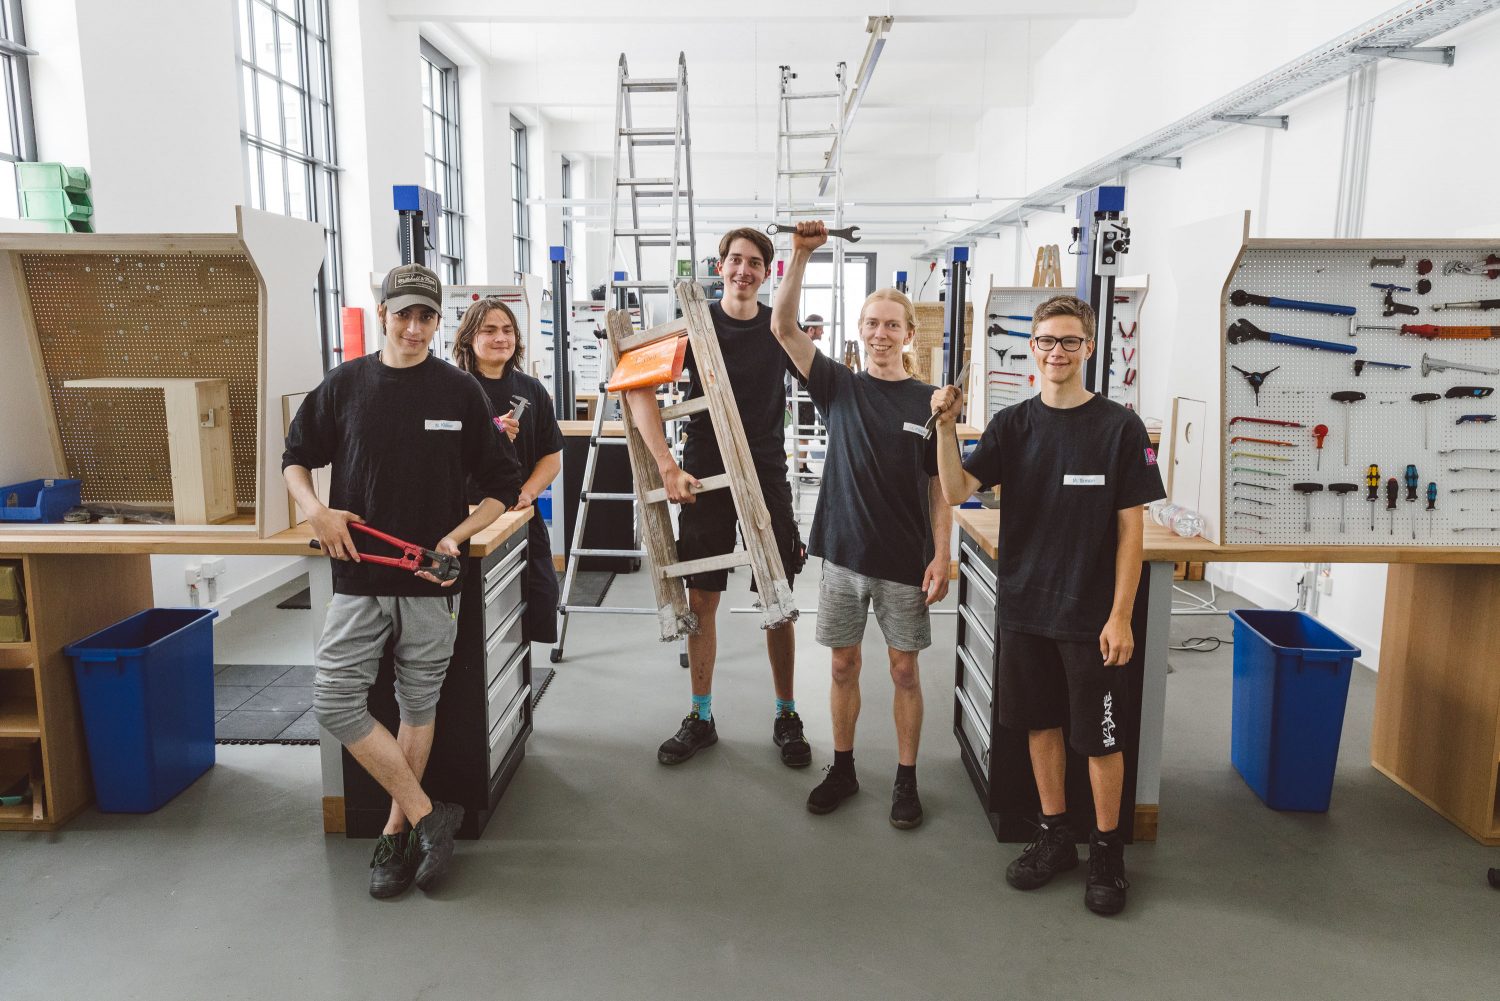 Ein Team aus jungen, männlichen Mitarbeitern in der Werkstatt von FahrRad R18. Sie tragen schwarze Tshirts mit Firmierung und wirken Motiviert. Einige halten Werkzeug (in die Luft) und einer steht neben einer Tretleiter.